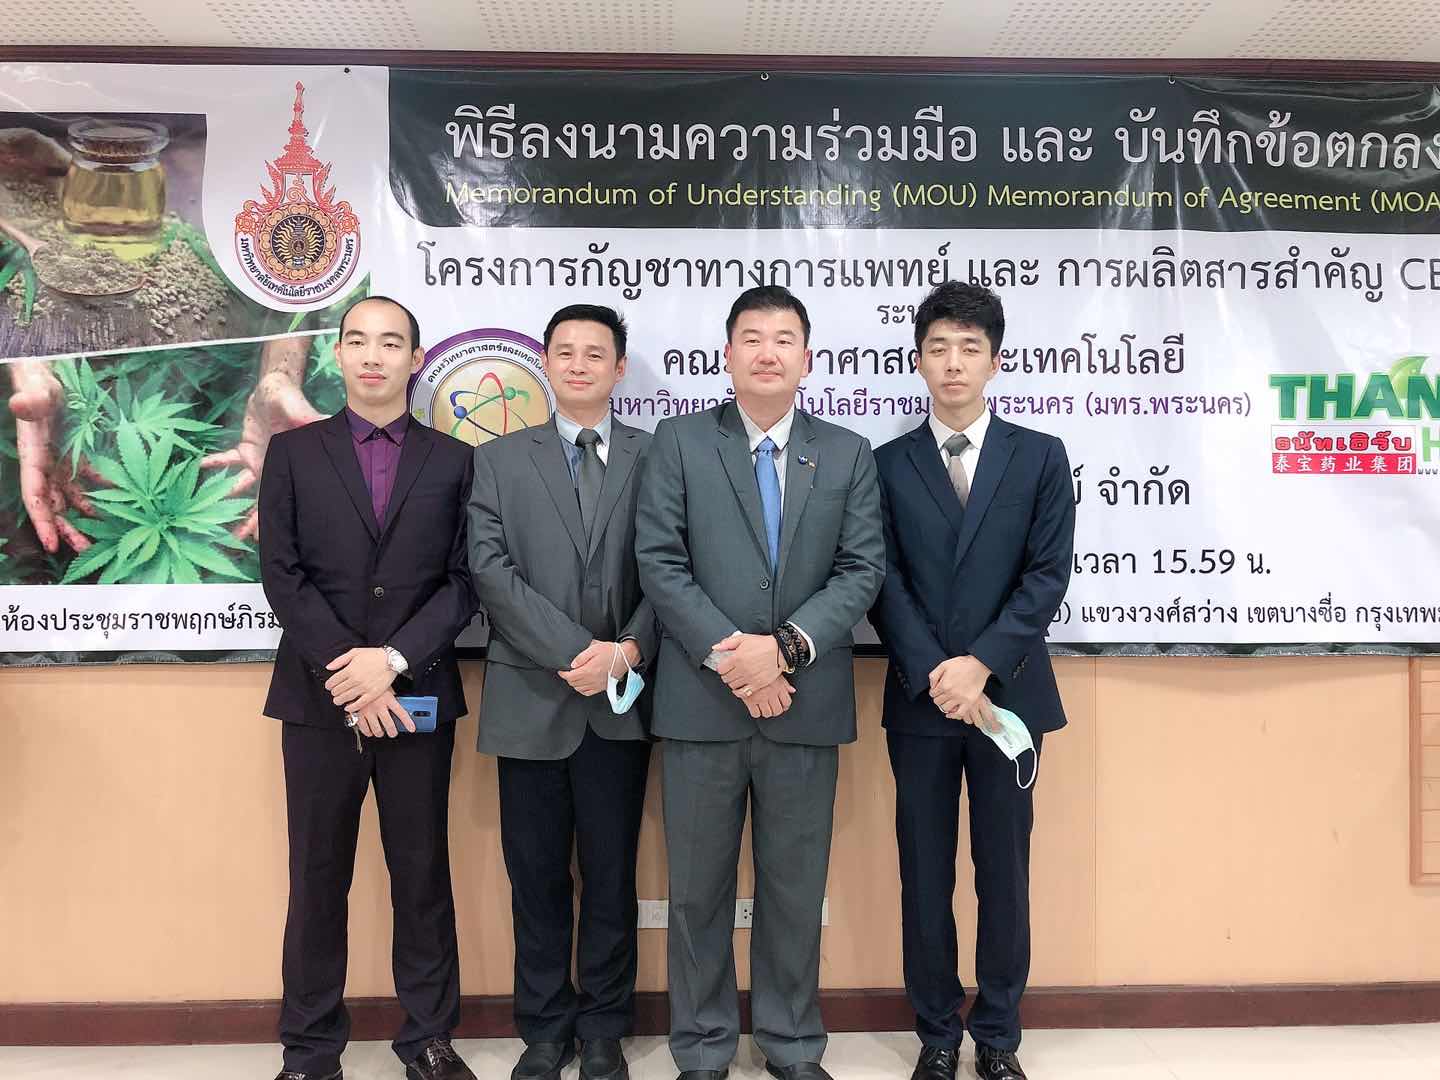 泰国泰宝药业集团与MOU和MOA合作签约仪式在泰国举行